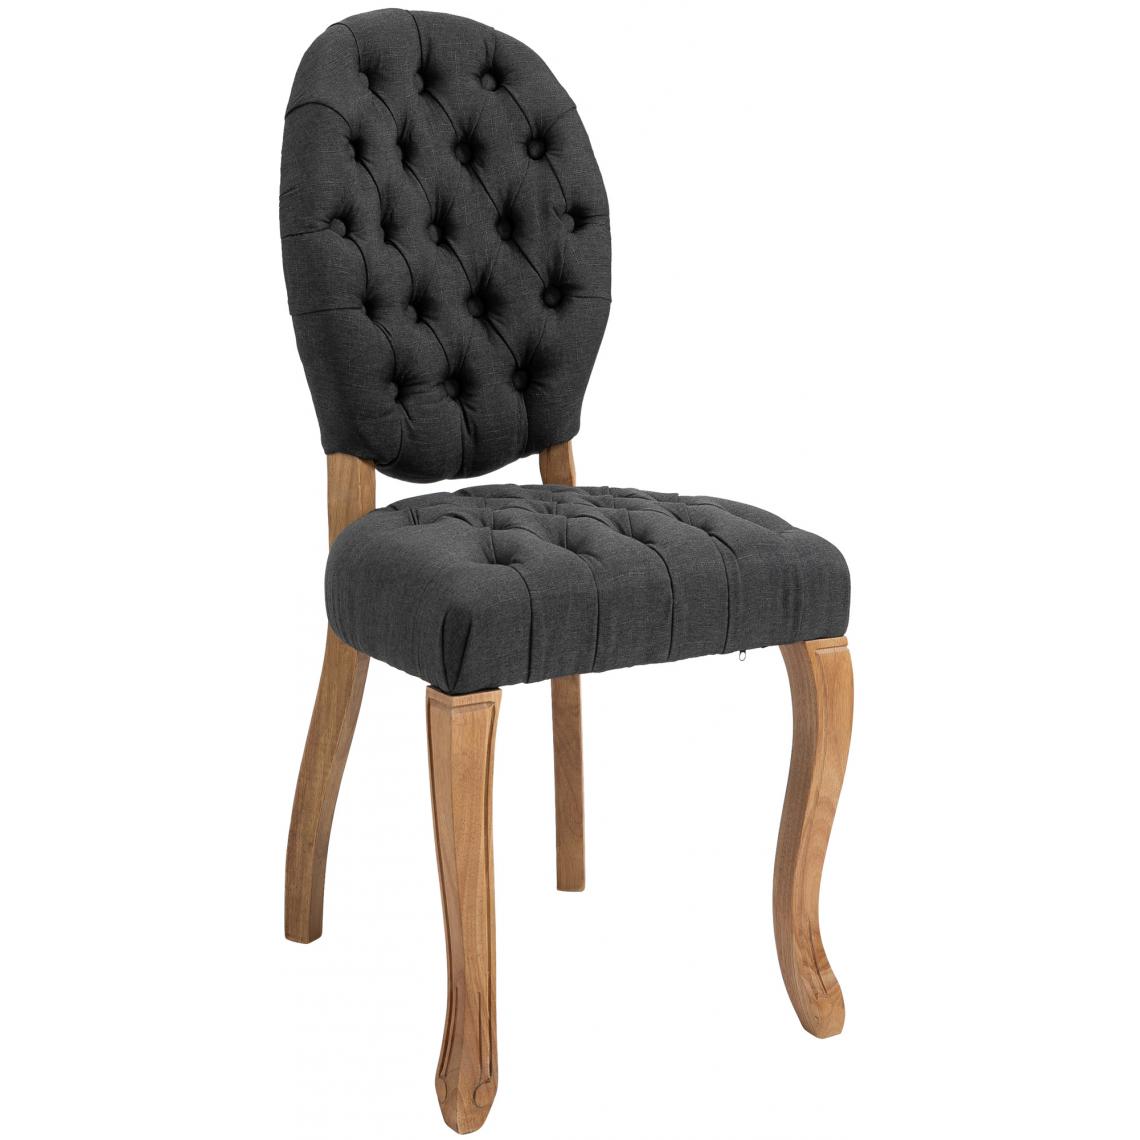 Icaverne - Admirable Chaise de salle à manger reference Saint-Domingue tissu antique-clair couleur gris foncé - Chaises